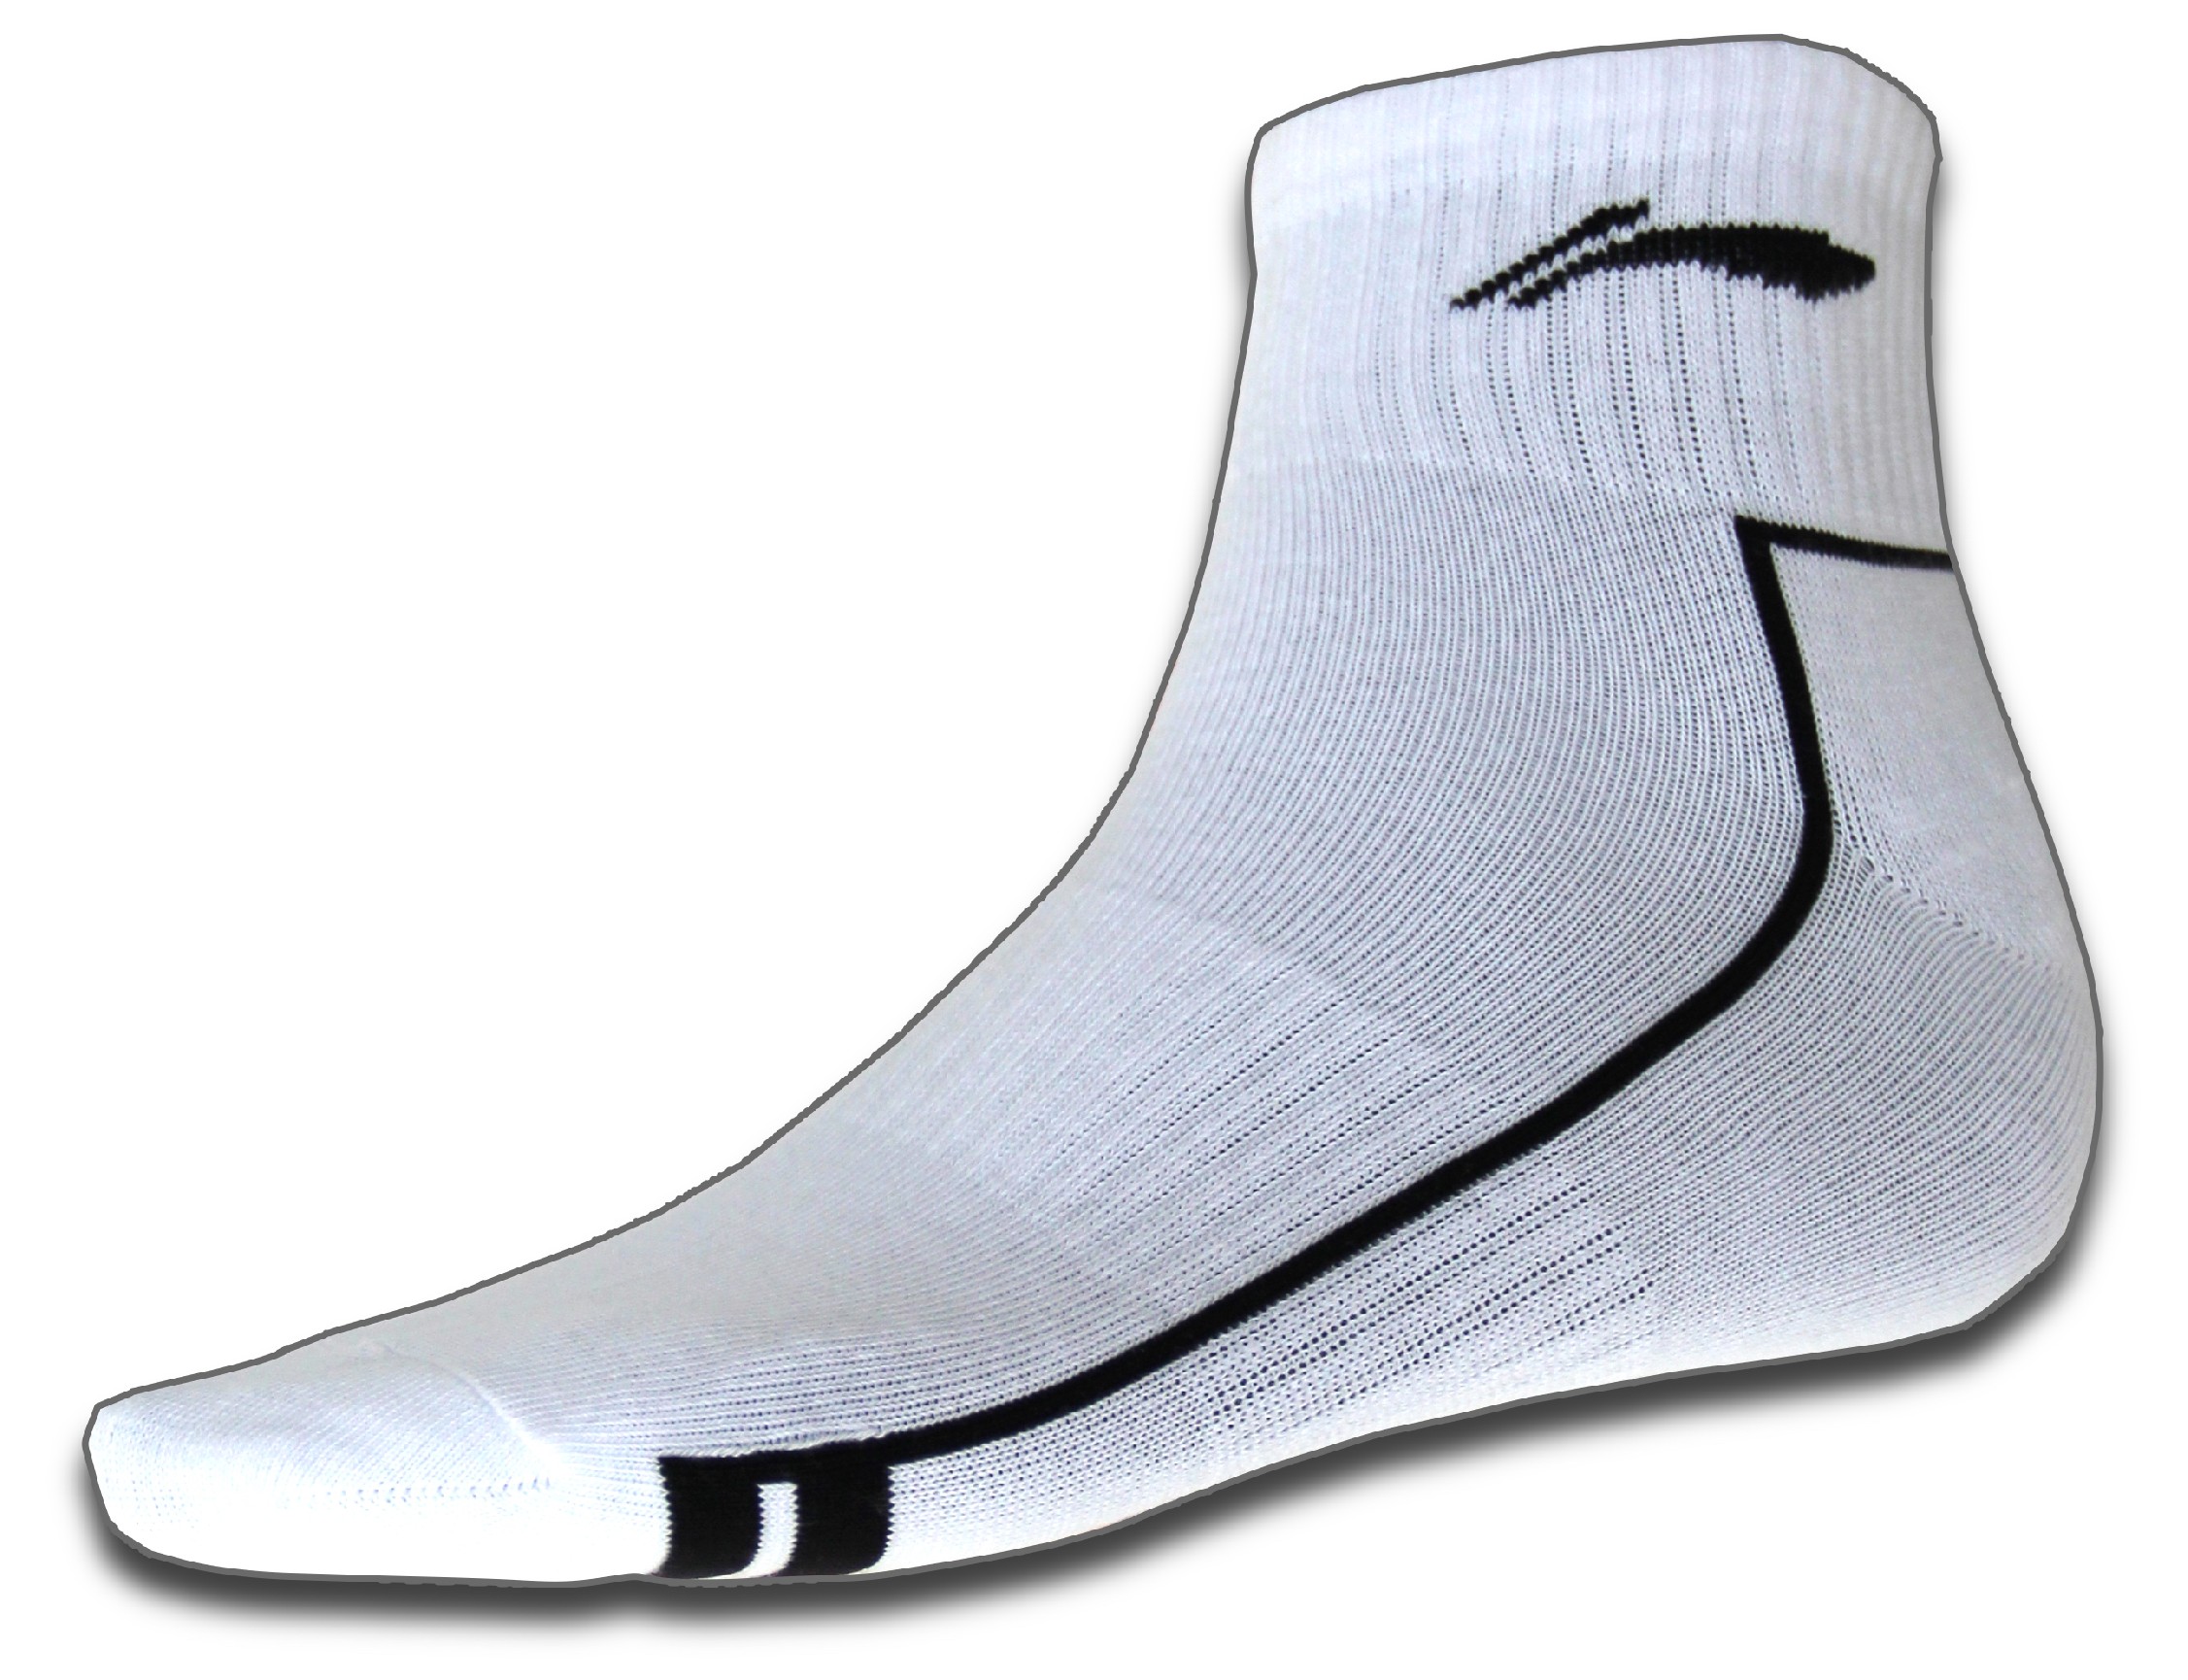 Sportovní ponožky LI-NING STABLE 2016 Pánské